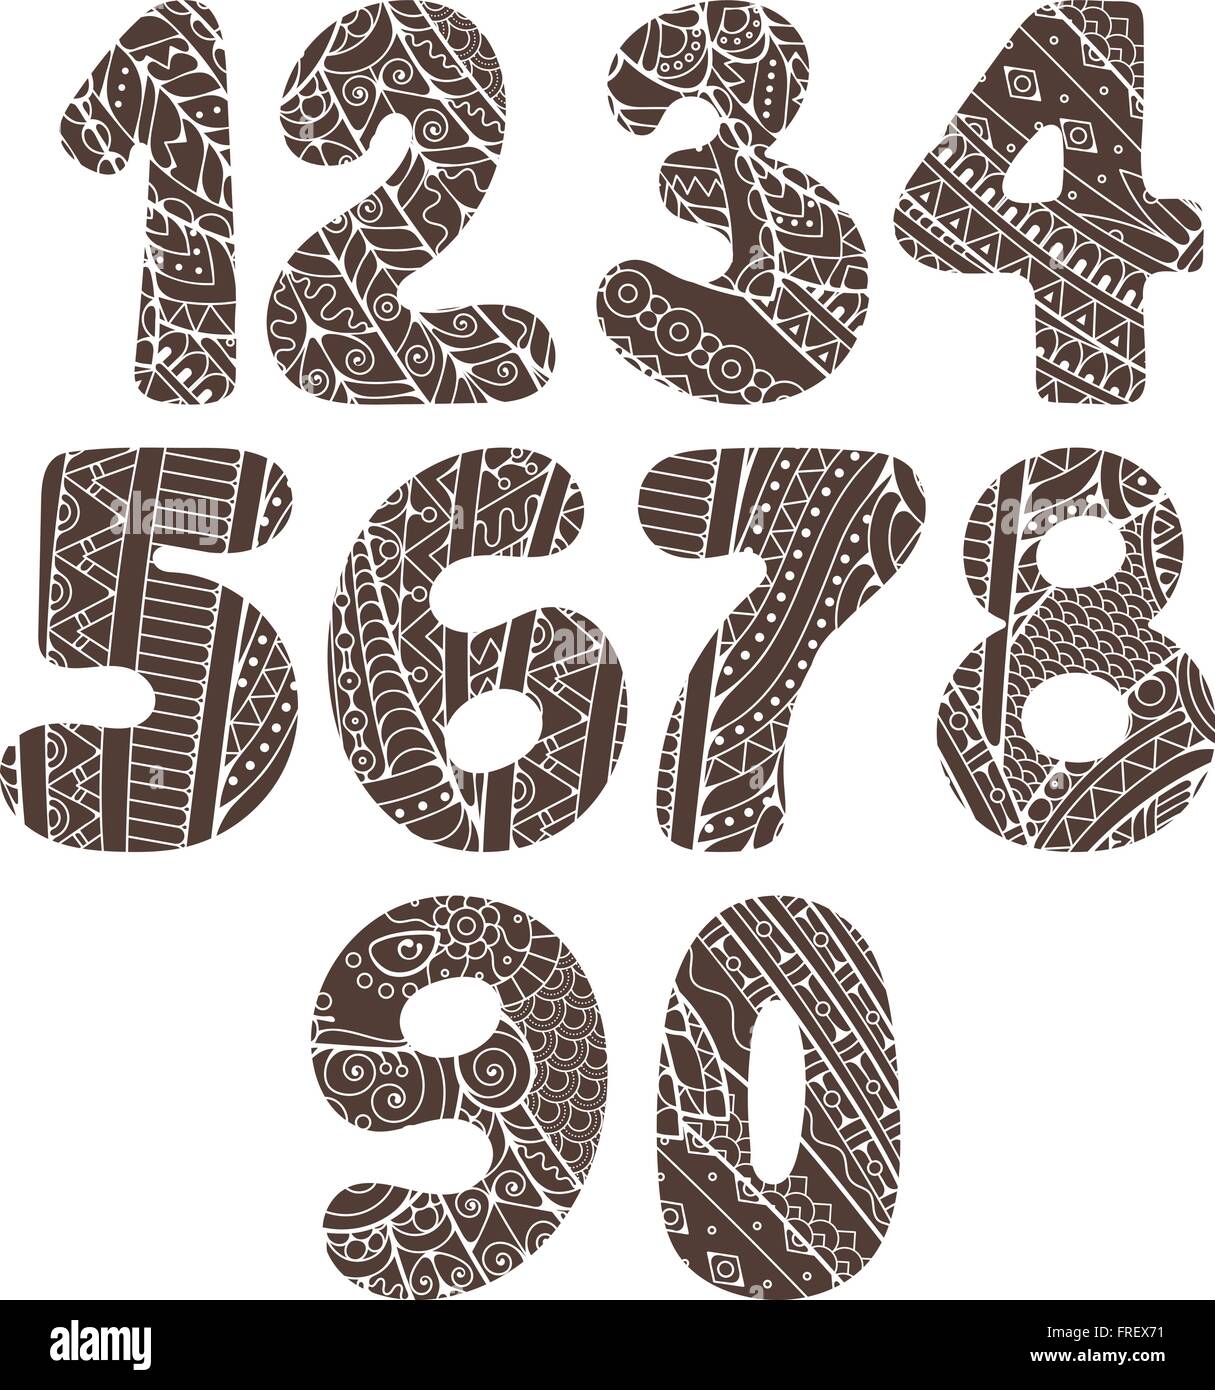 Zentangle Zahlen gesetzt. Sammlung von Doodle Zahlen mit Zentangle  Elementen. Vektor-Illustration kann für Web-Design, Broschüren,  print-Karten, Textil T-shirts, print-Elemente und andere verwendet werden  Stock-Vektorgrafik - Alamy